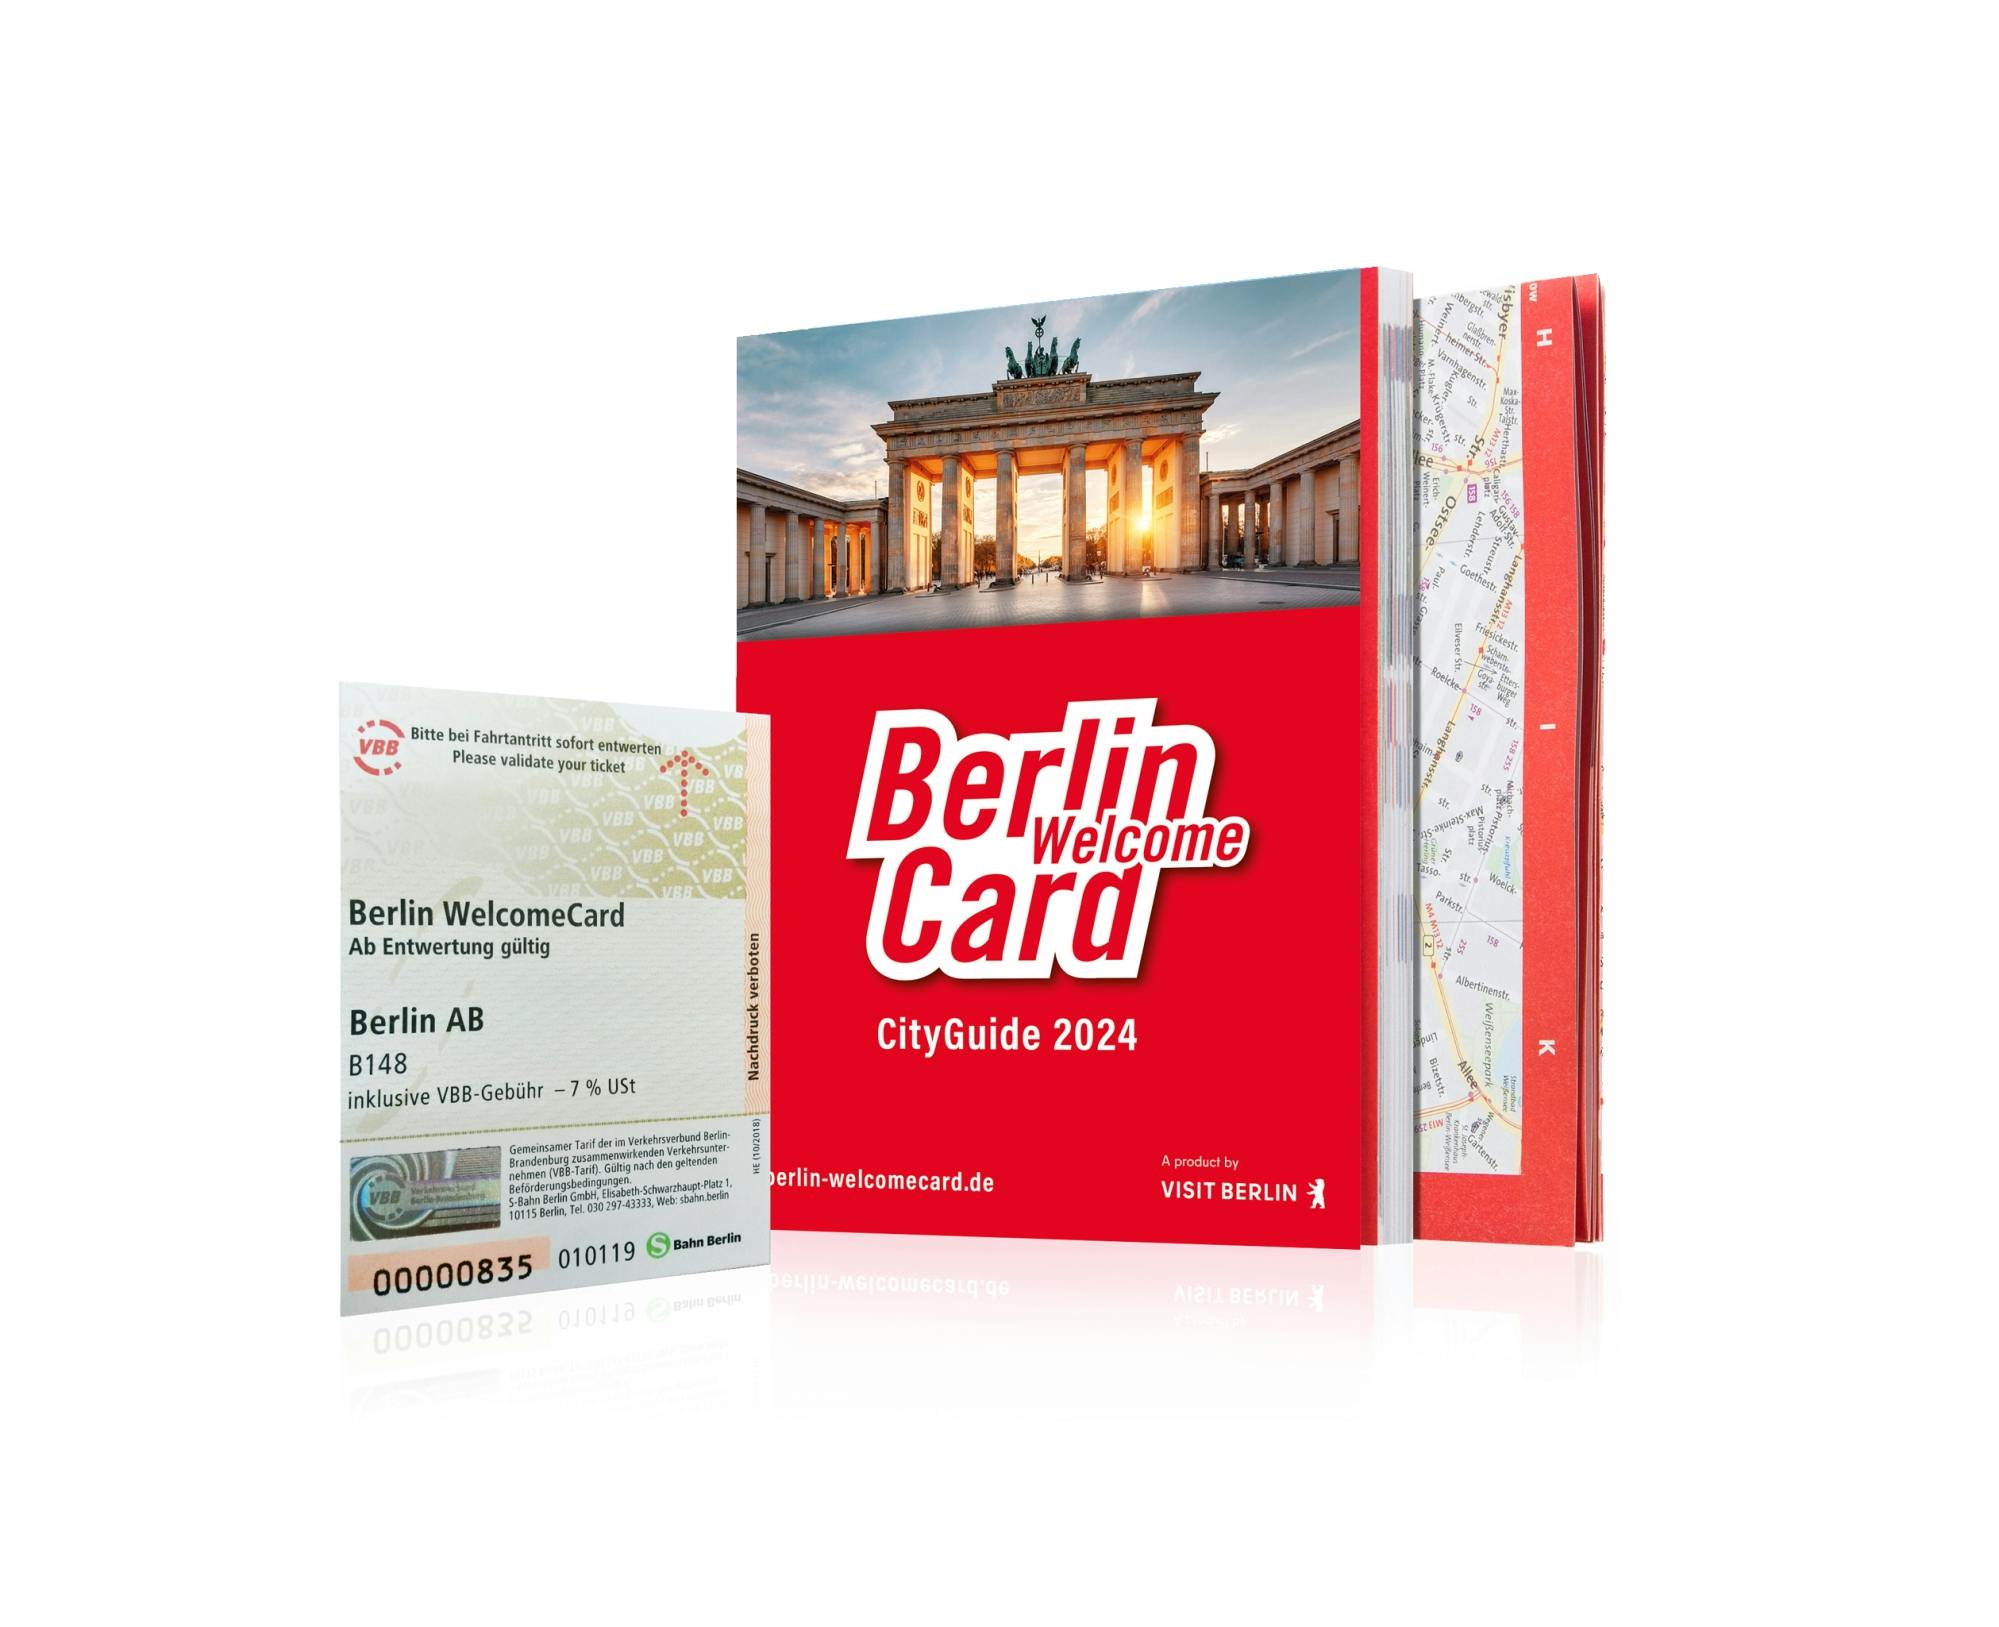 Berlin WelcomeCard: gratis kollektivtransport og museumsrabatter